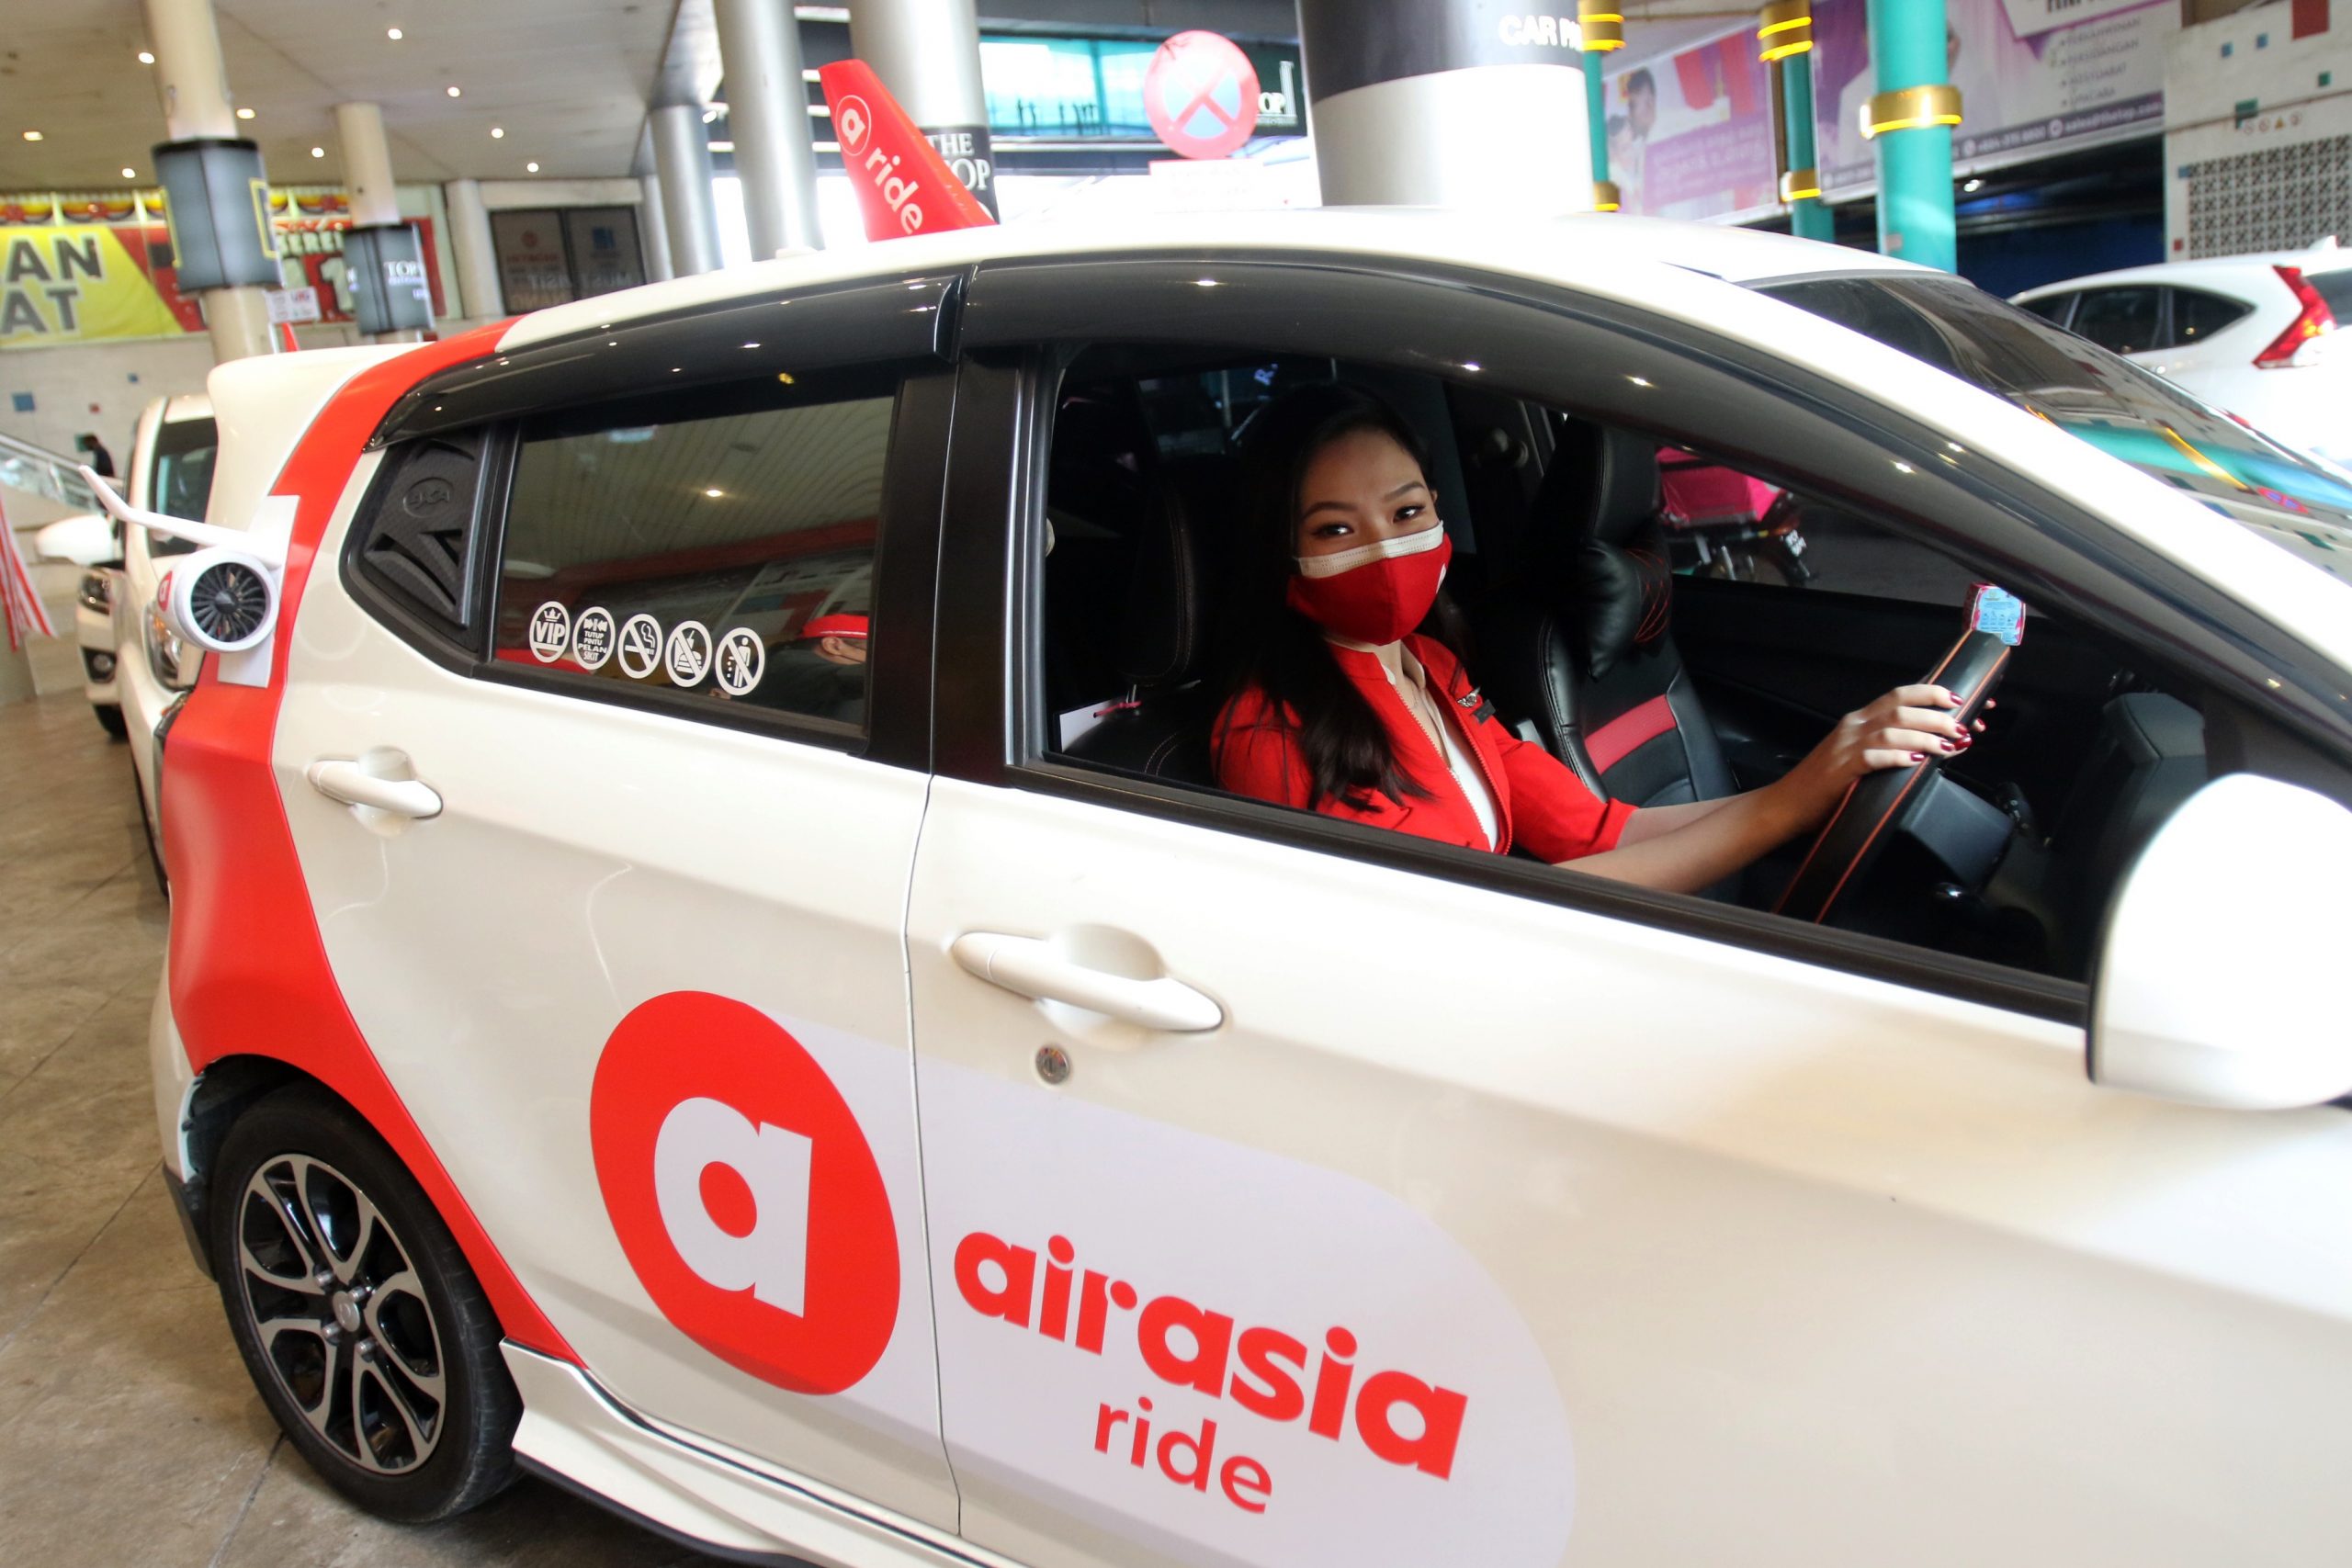 <차량공유서비스인 에어아시아 라이드는 여성 승객을 위해 여성 운전자를 배치하는 서비스를 오는 4월 출시한다 - 출처: "Technave">